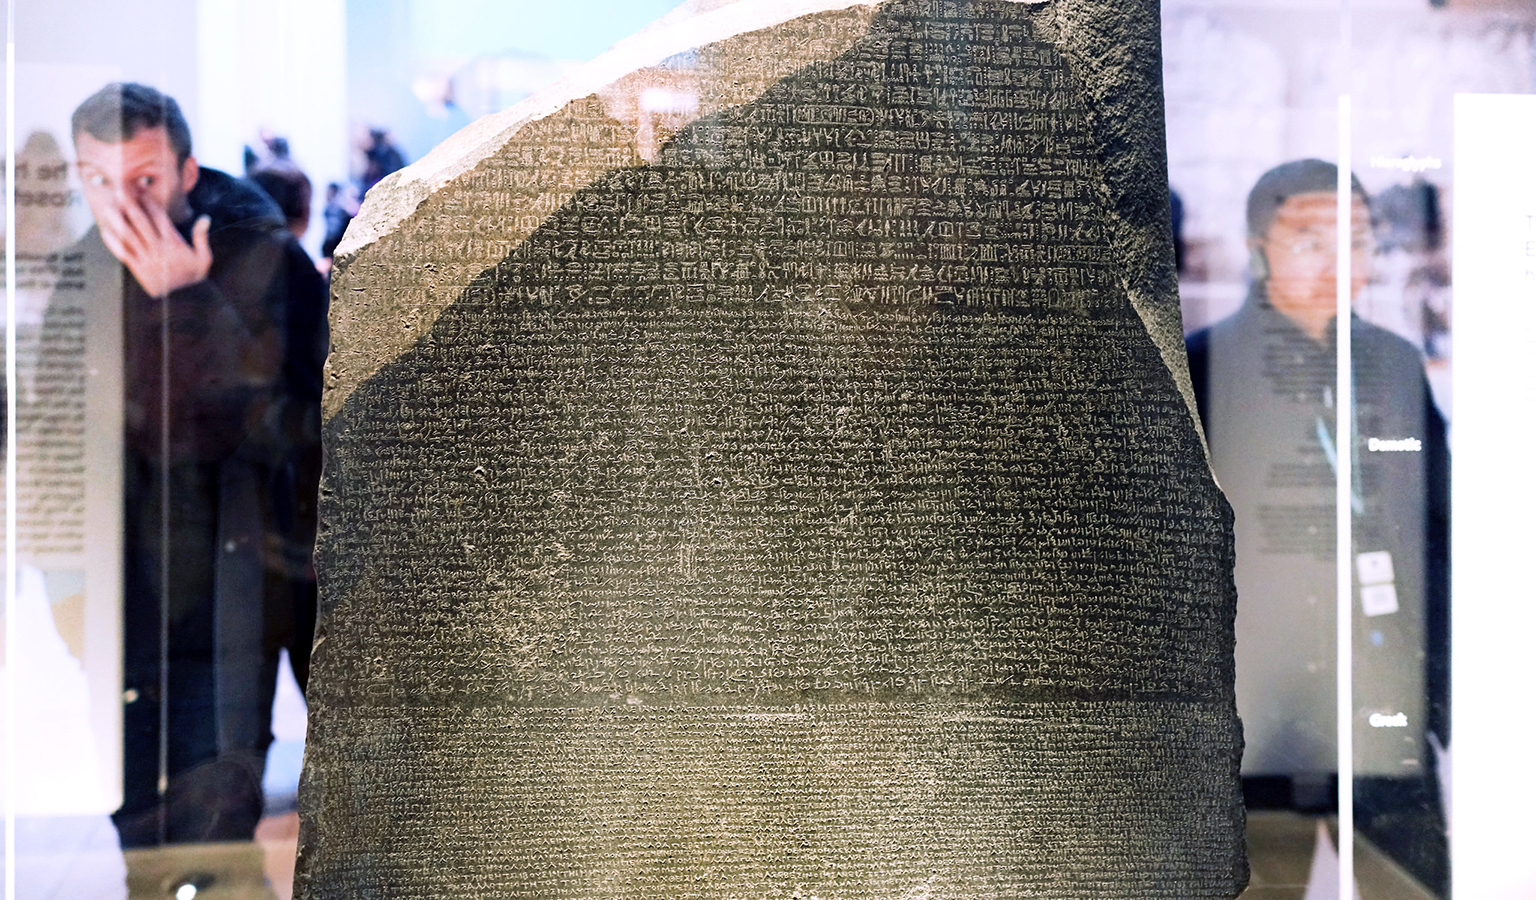 Visitantes ven la Piedra Rosetta en el Museo Británico (foto: Dr. Steven Zucker, CC BY-NC-SA 2.0)